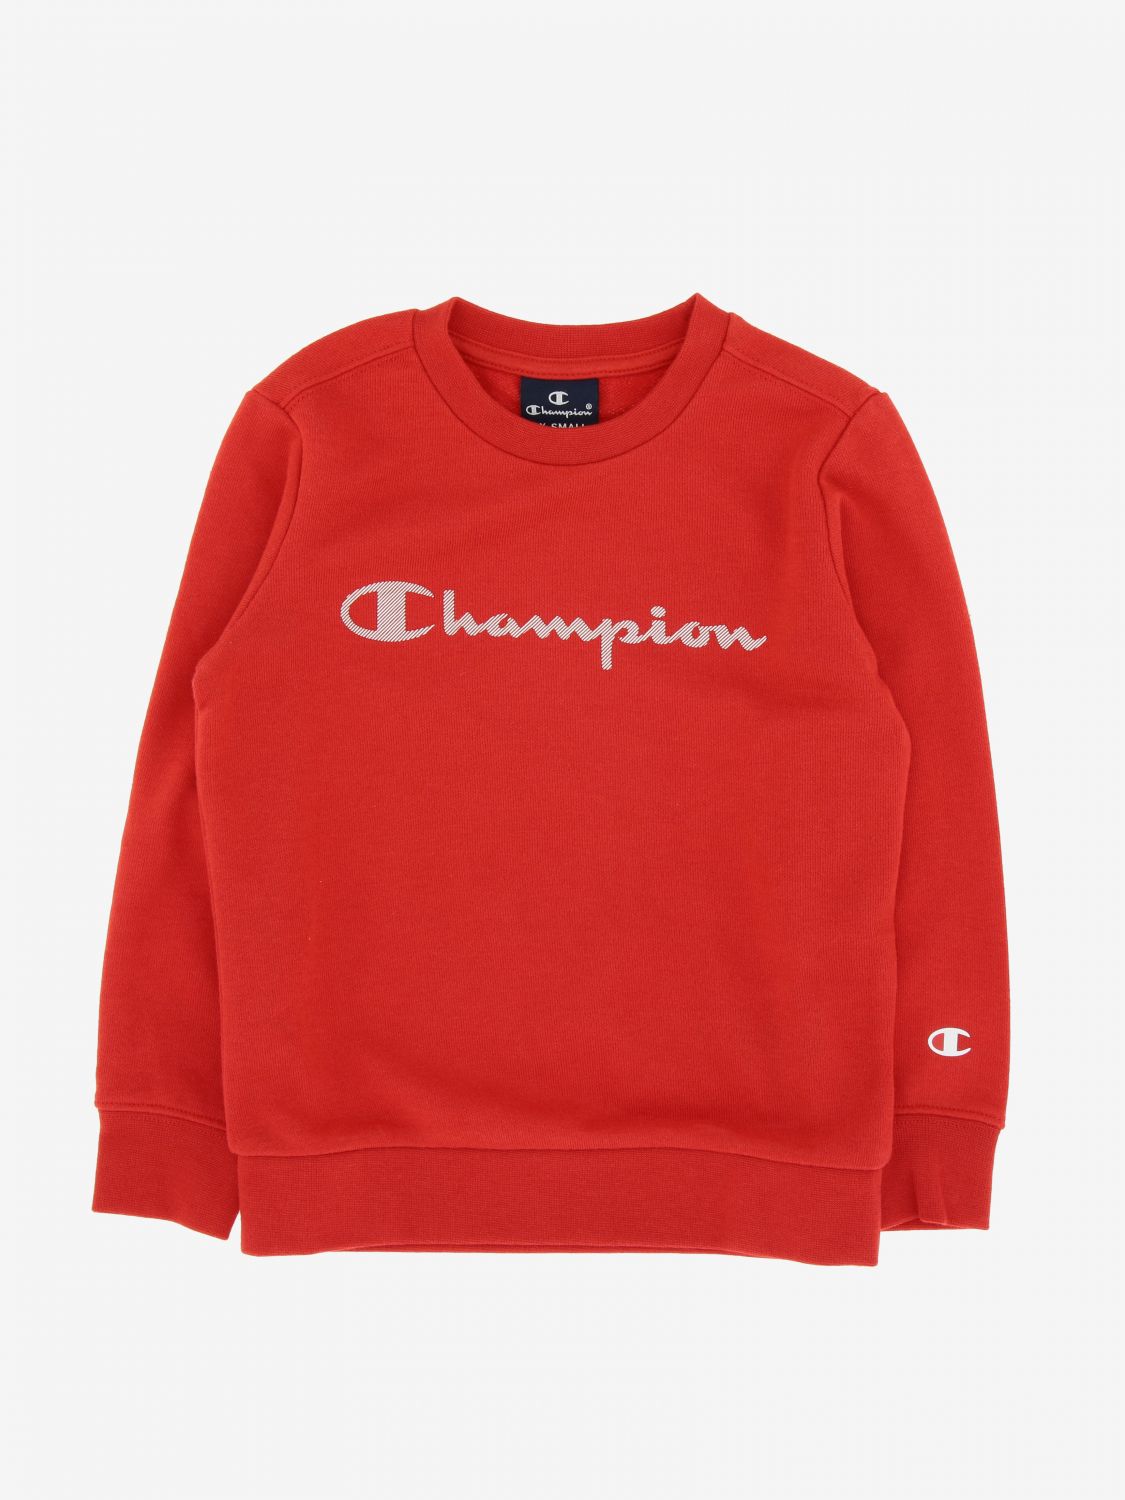 Sweater kids Champion | Sweater Champion Kids Red | Sweater Champion ...